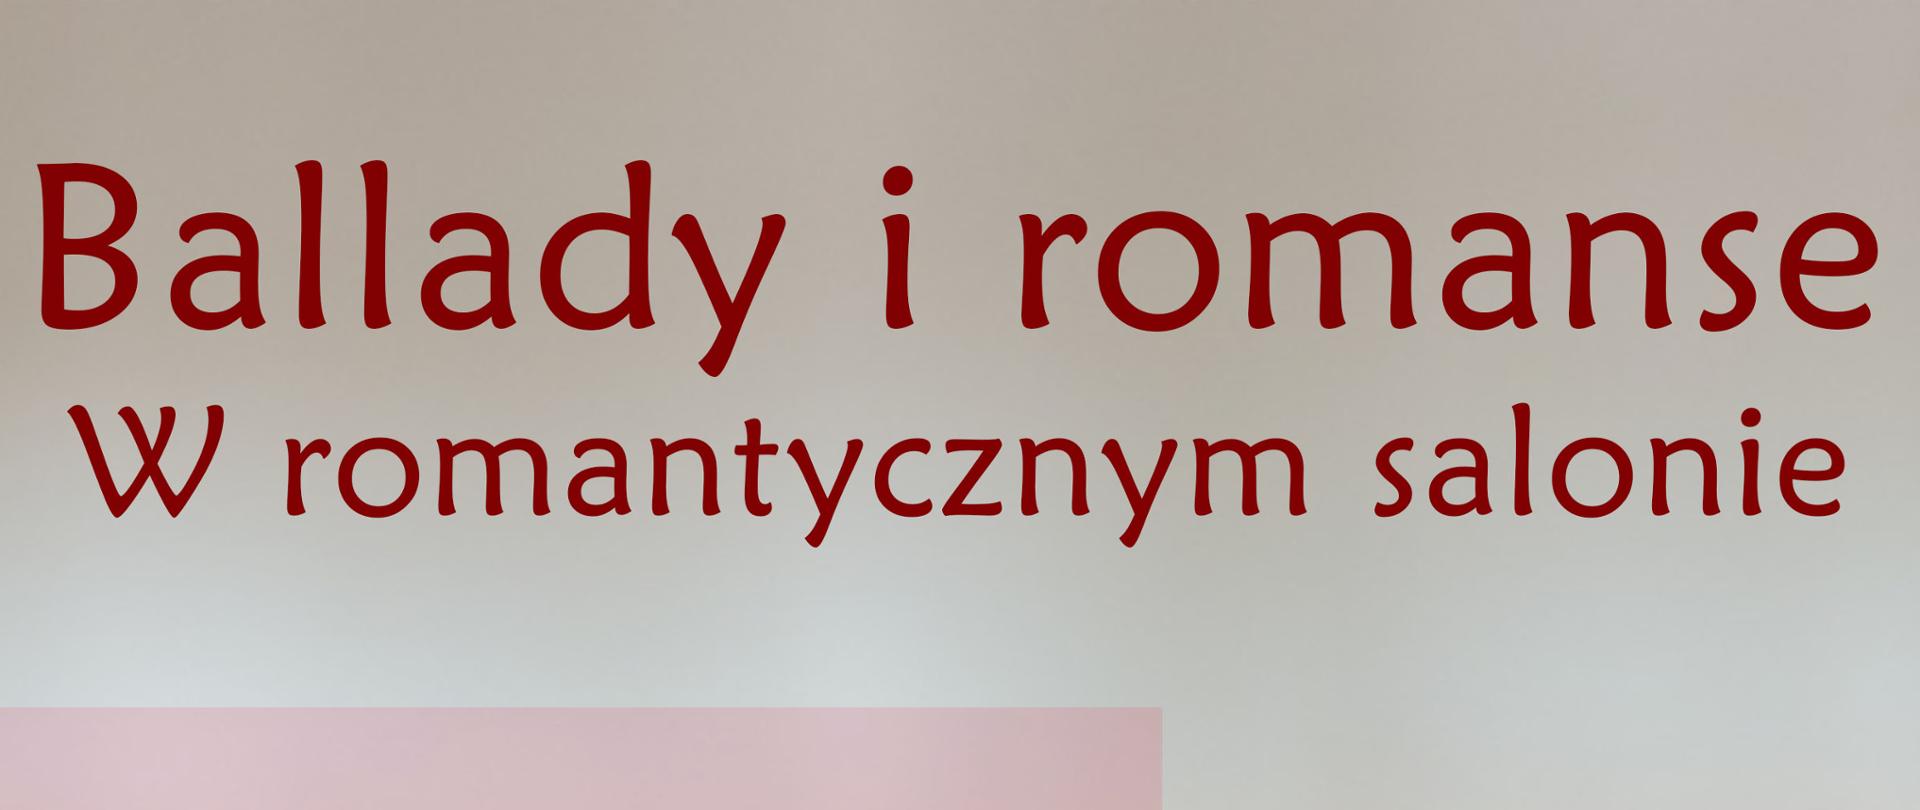 Plakat koncertu Ballady i Romanse - W romantycznym ogrodzie zawierający informacje o terminie, godzinie oraz miejscu wydarzenia oraz o wykonawcach i akompaniatorach. W centralnej części usytuowana jest czerwona róża leżąca na kartce z zapisem nutowym